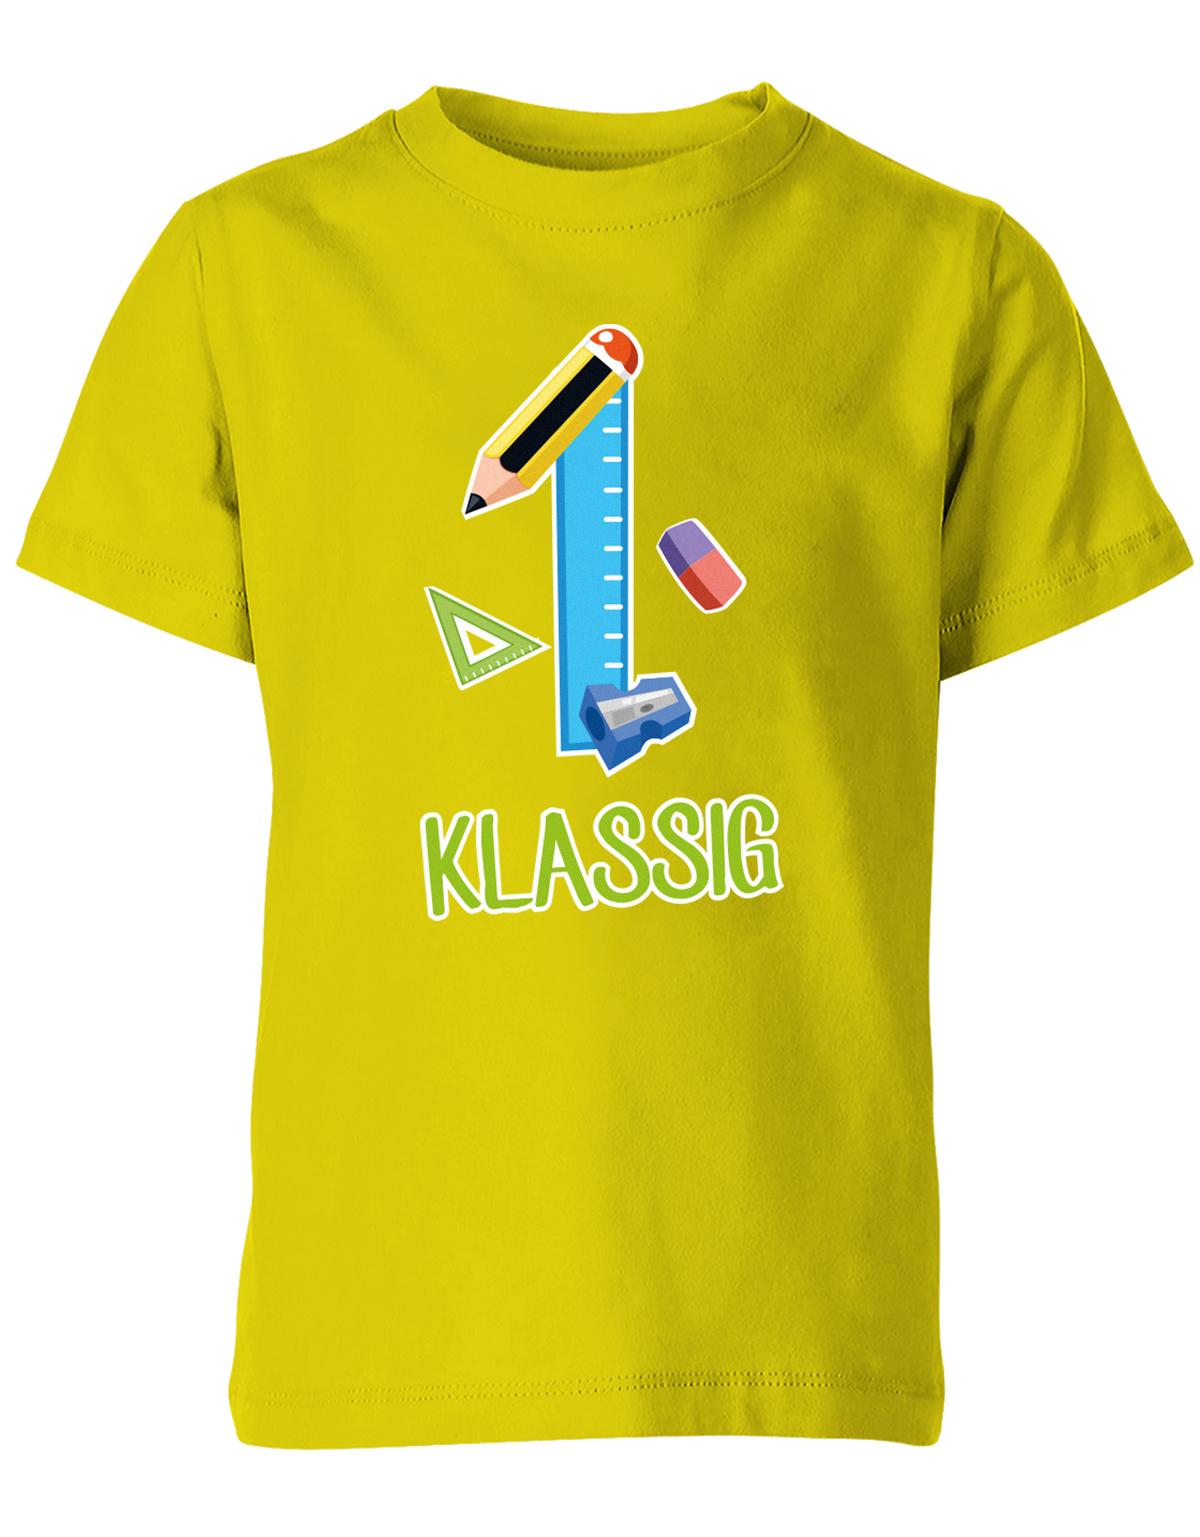 Schulkind 2023 Erst Klassig - Geschenk zur Einschulung 1. Klasse - Schule - Kinder T-Shirt Gelb